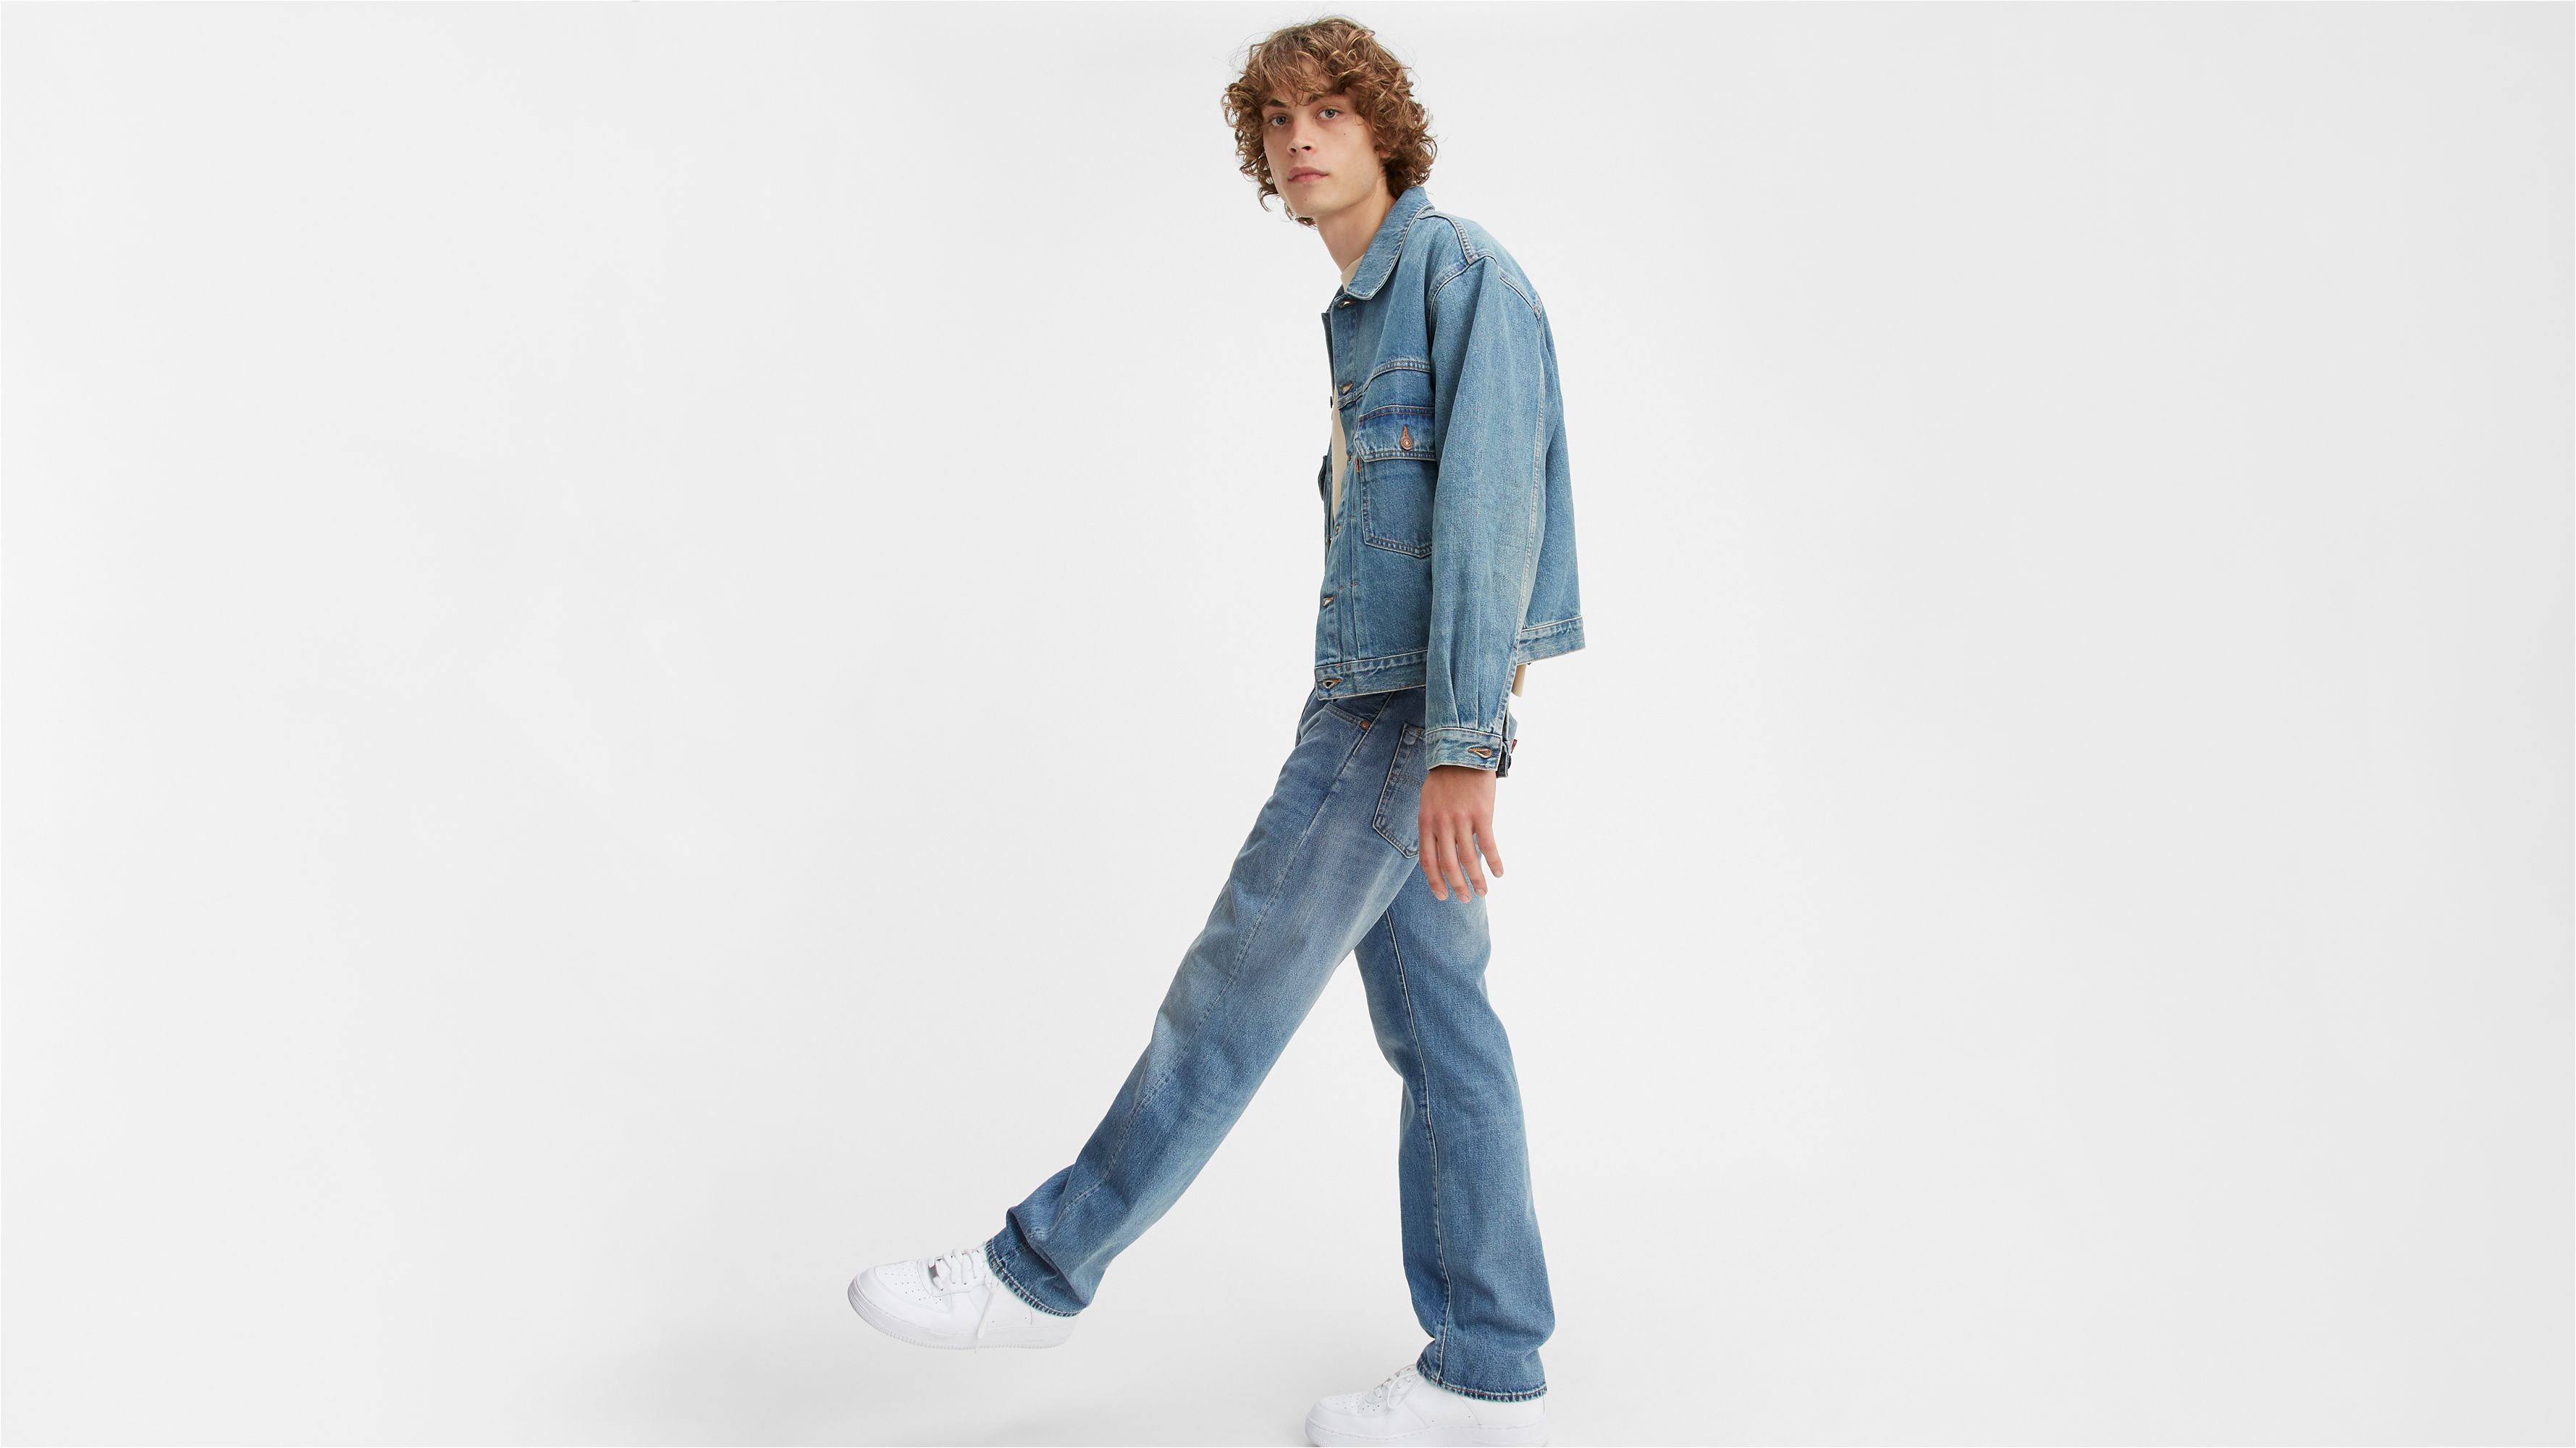 levis jeans vintage